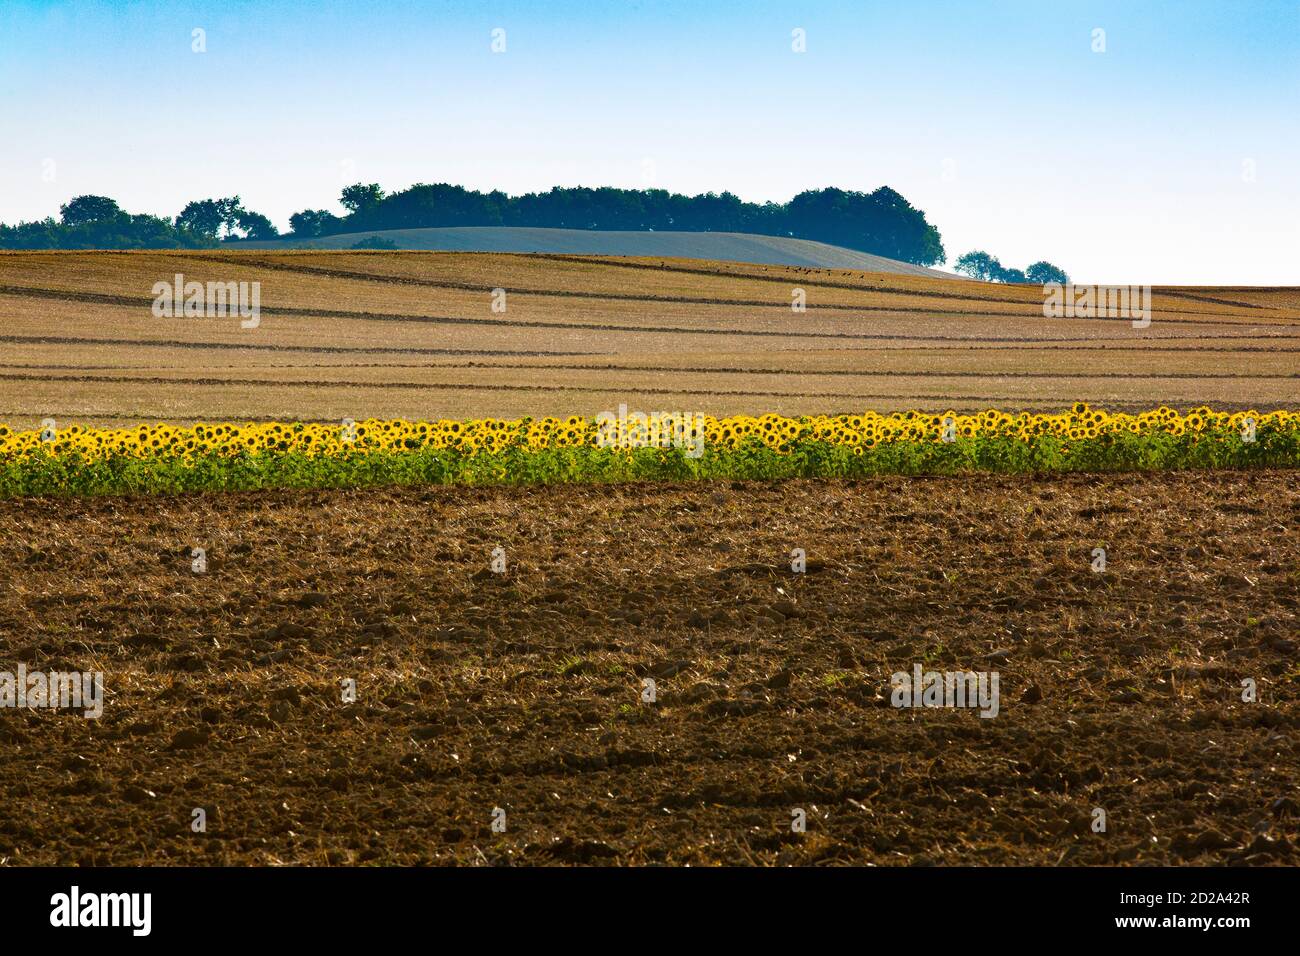 Un paysage agricole de collines douces qui sont typiques de la région de Gers dans le sud-ouest de la France. Banque D'Images